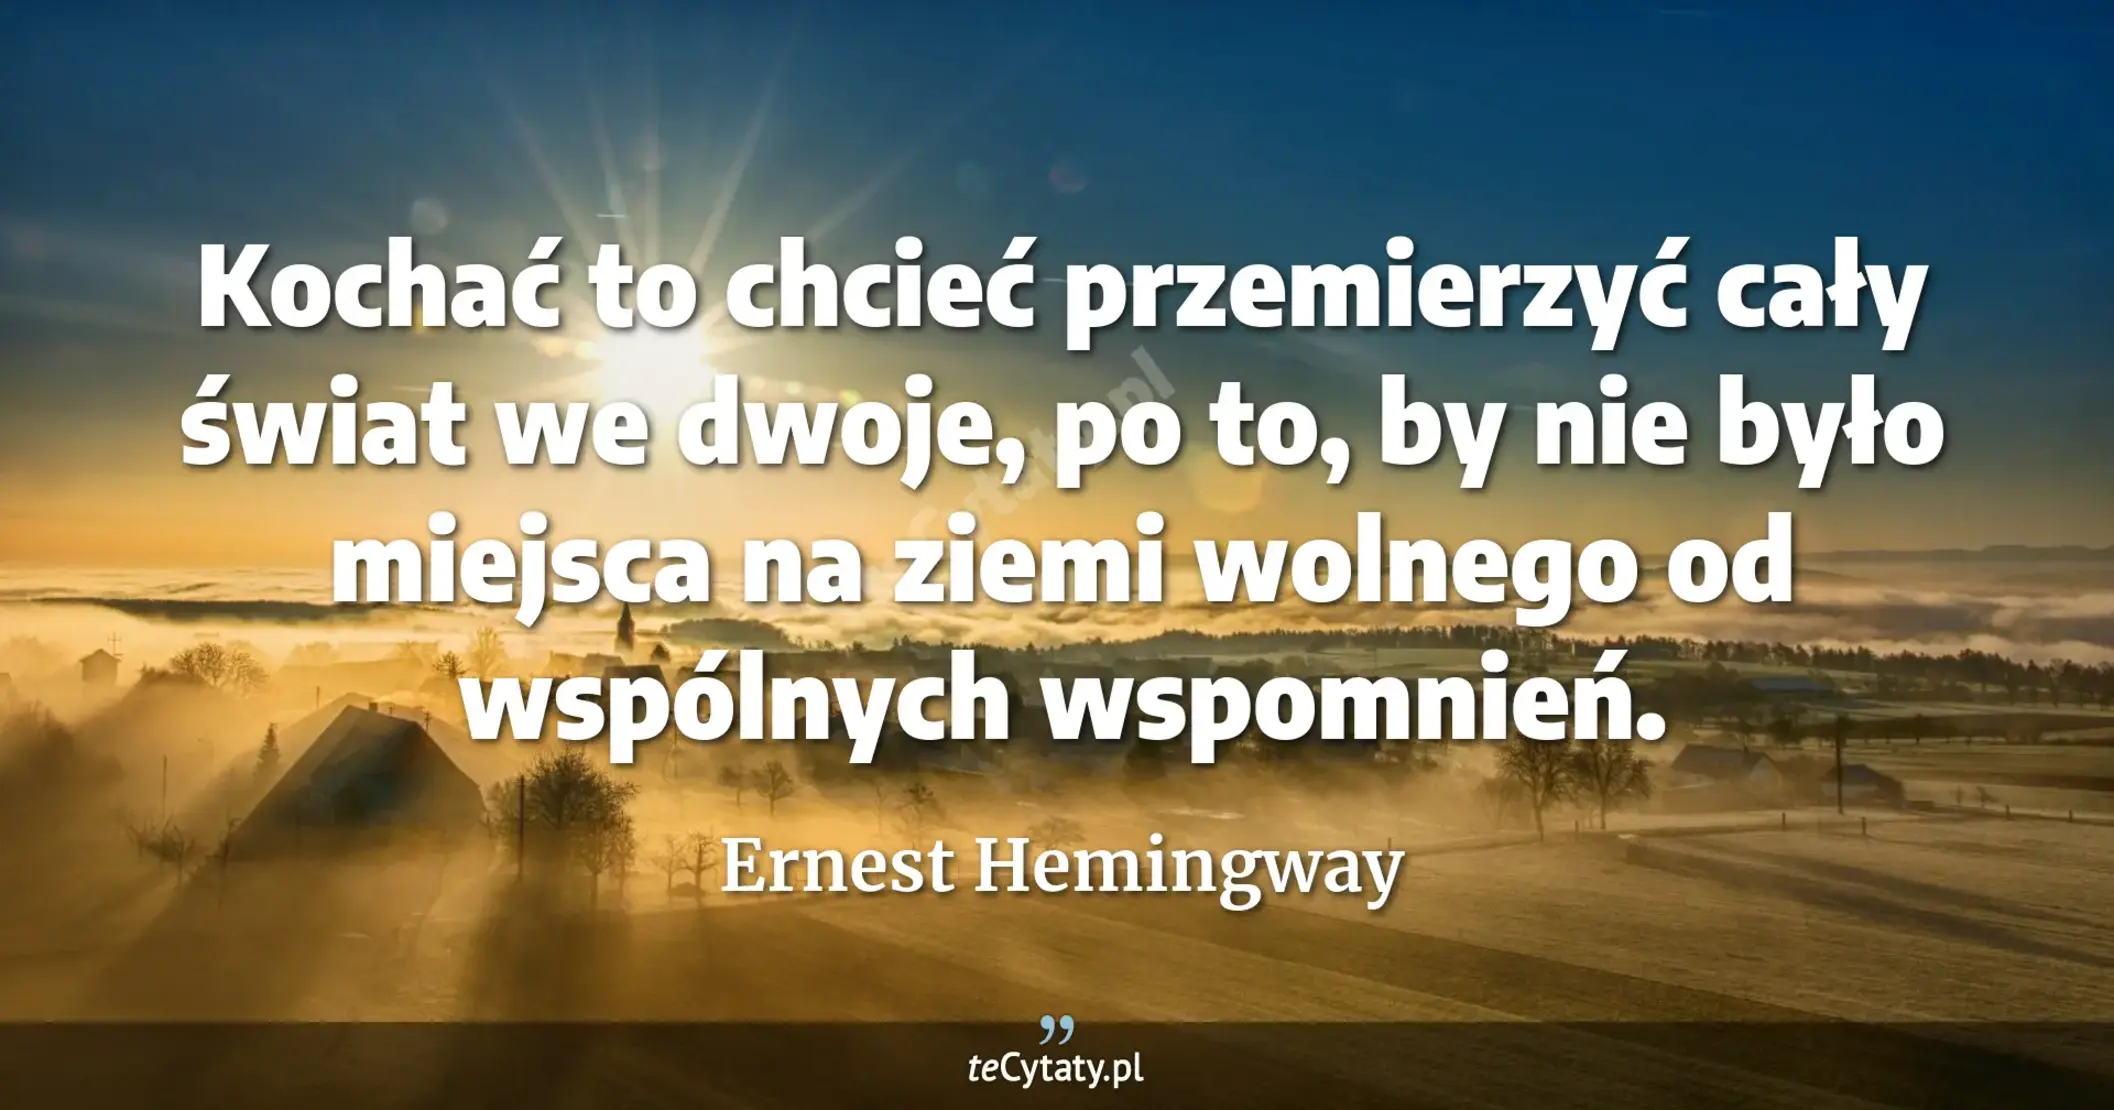 Kochać to chcieć przemierzyć cały świat we dwoje, po to, by nie było miejsca na ziemi wolnego od wspólnych wspomnień. - Ernest Hemingway